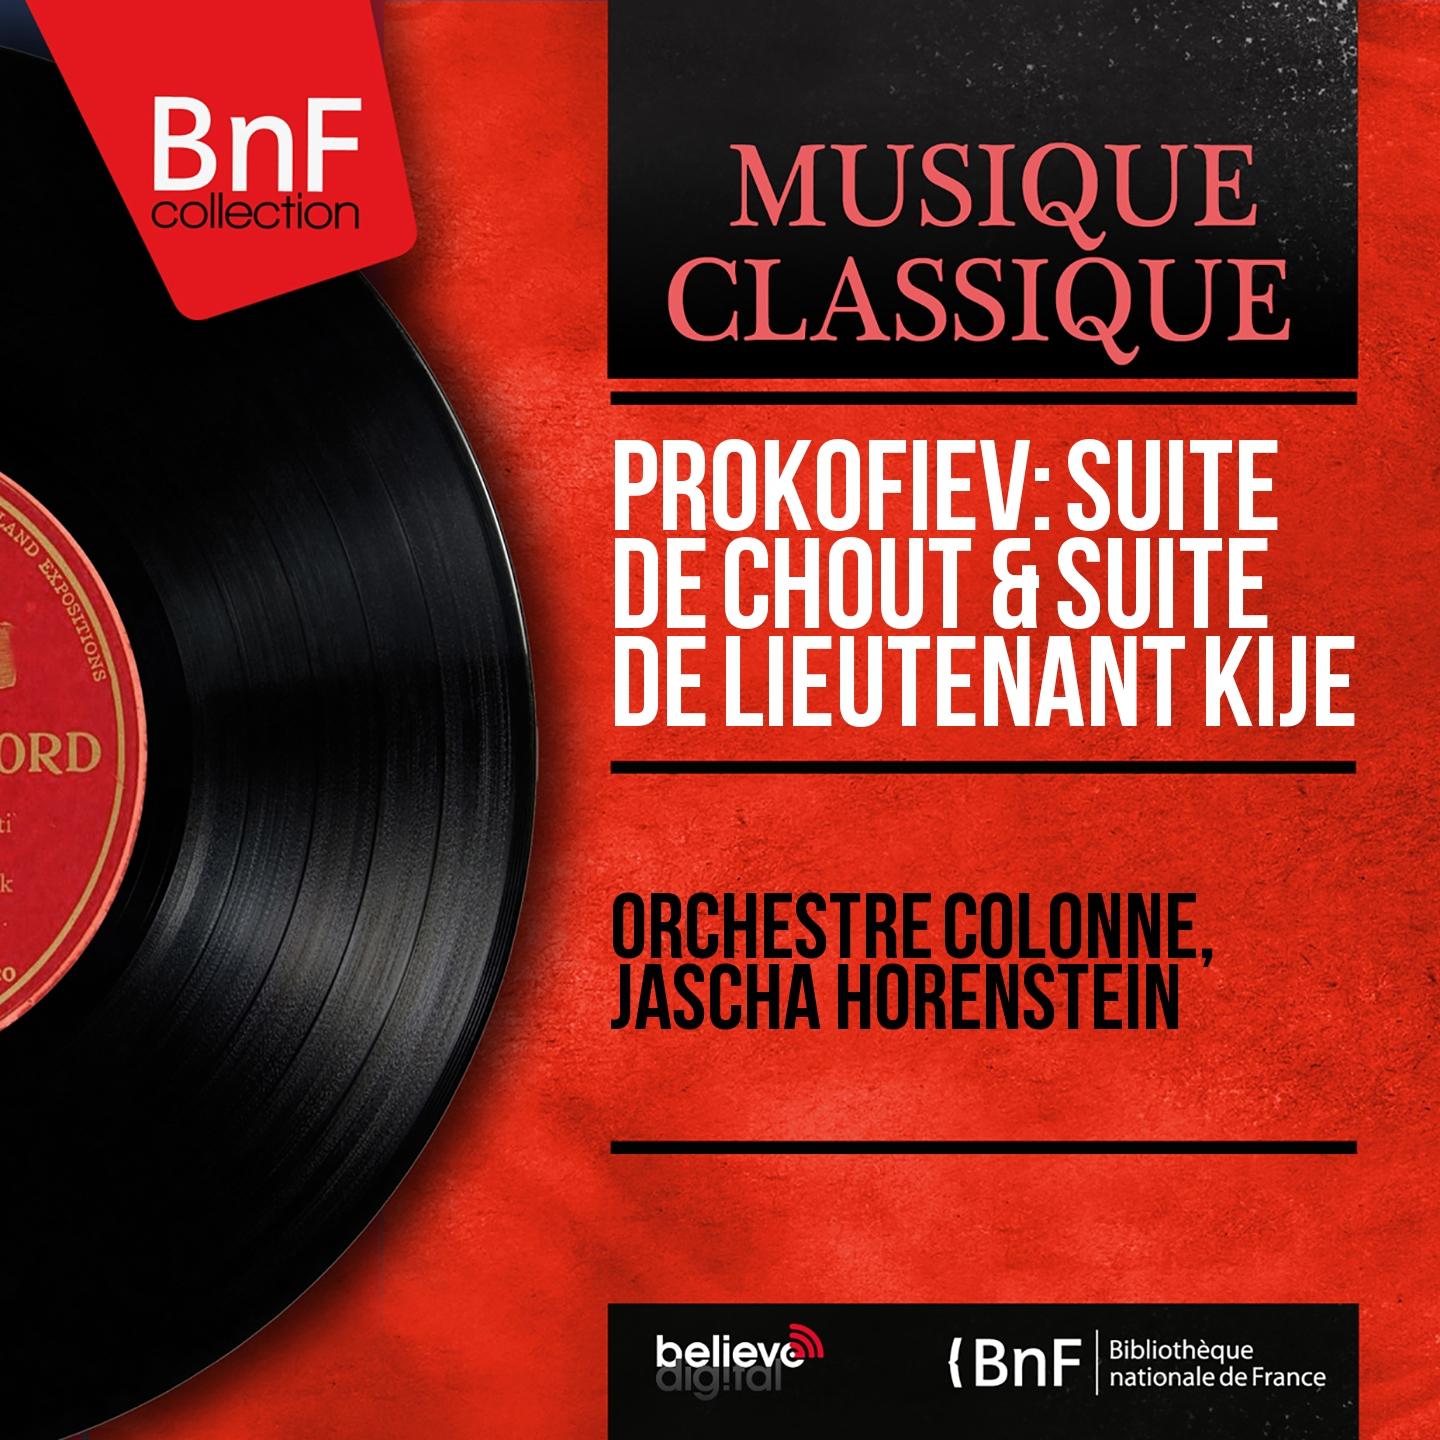 Prokofiev: Suite de Chout  Suite de Lieutenant Kije Mono Version